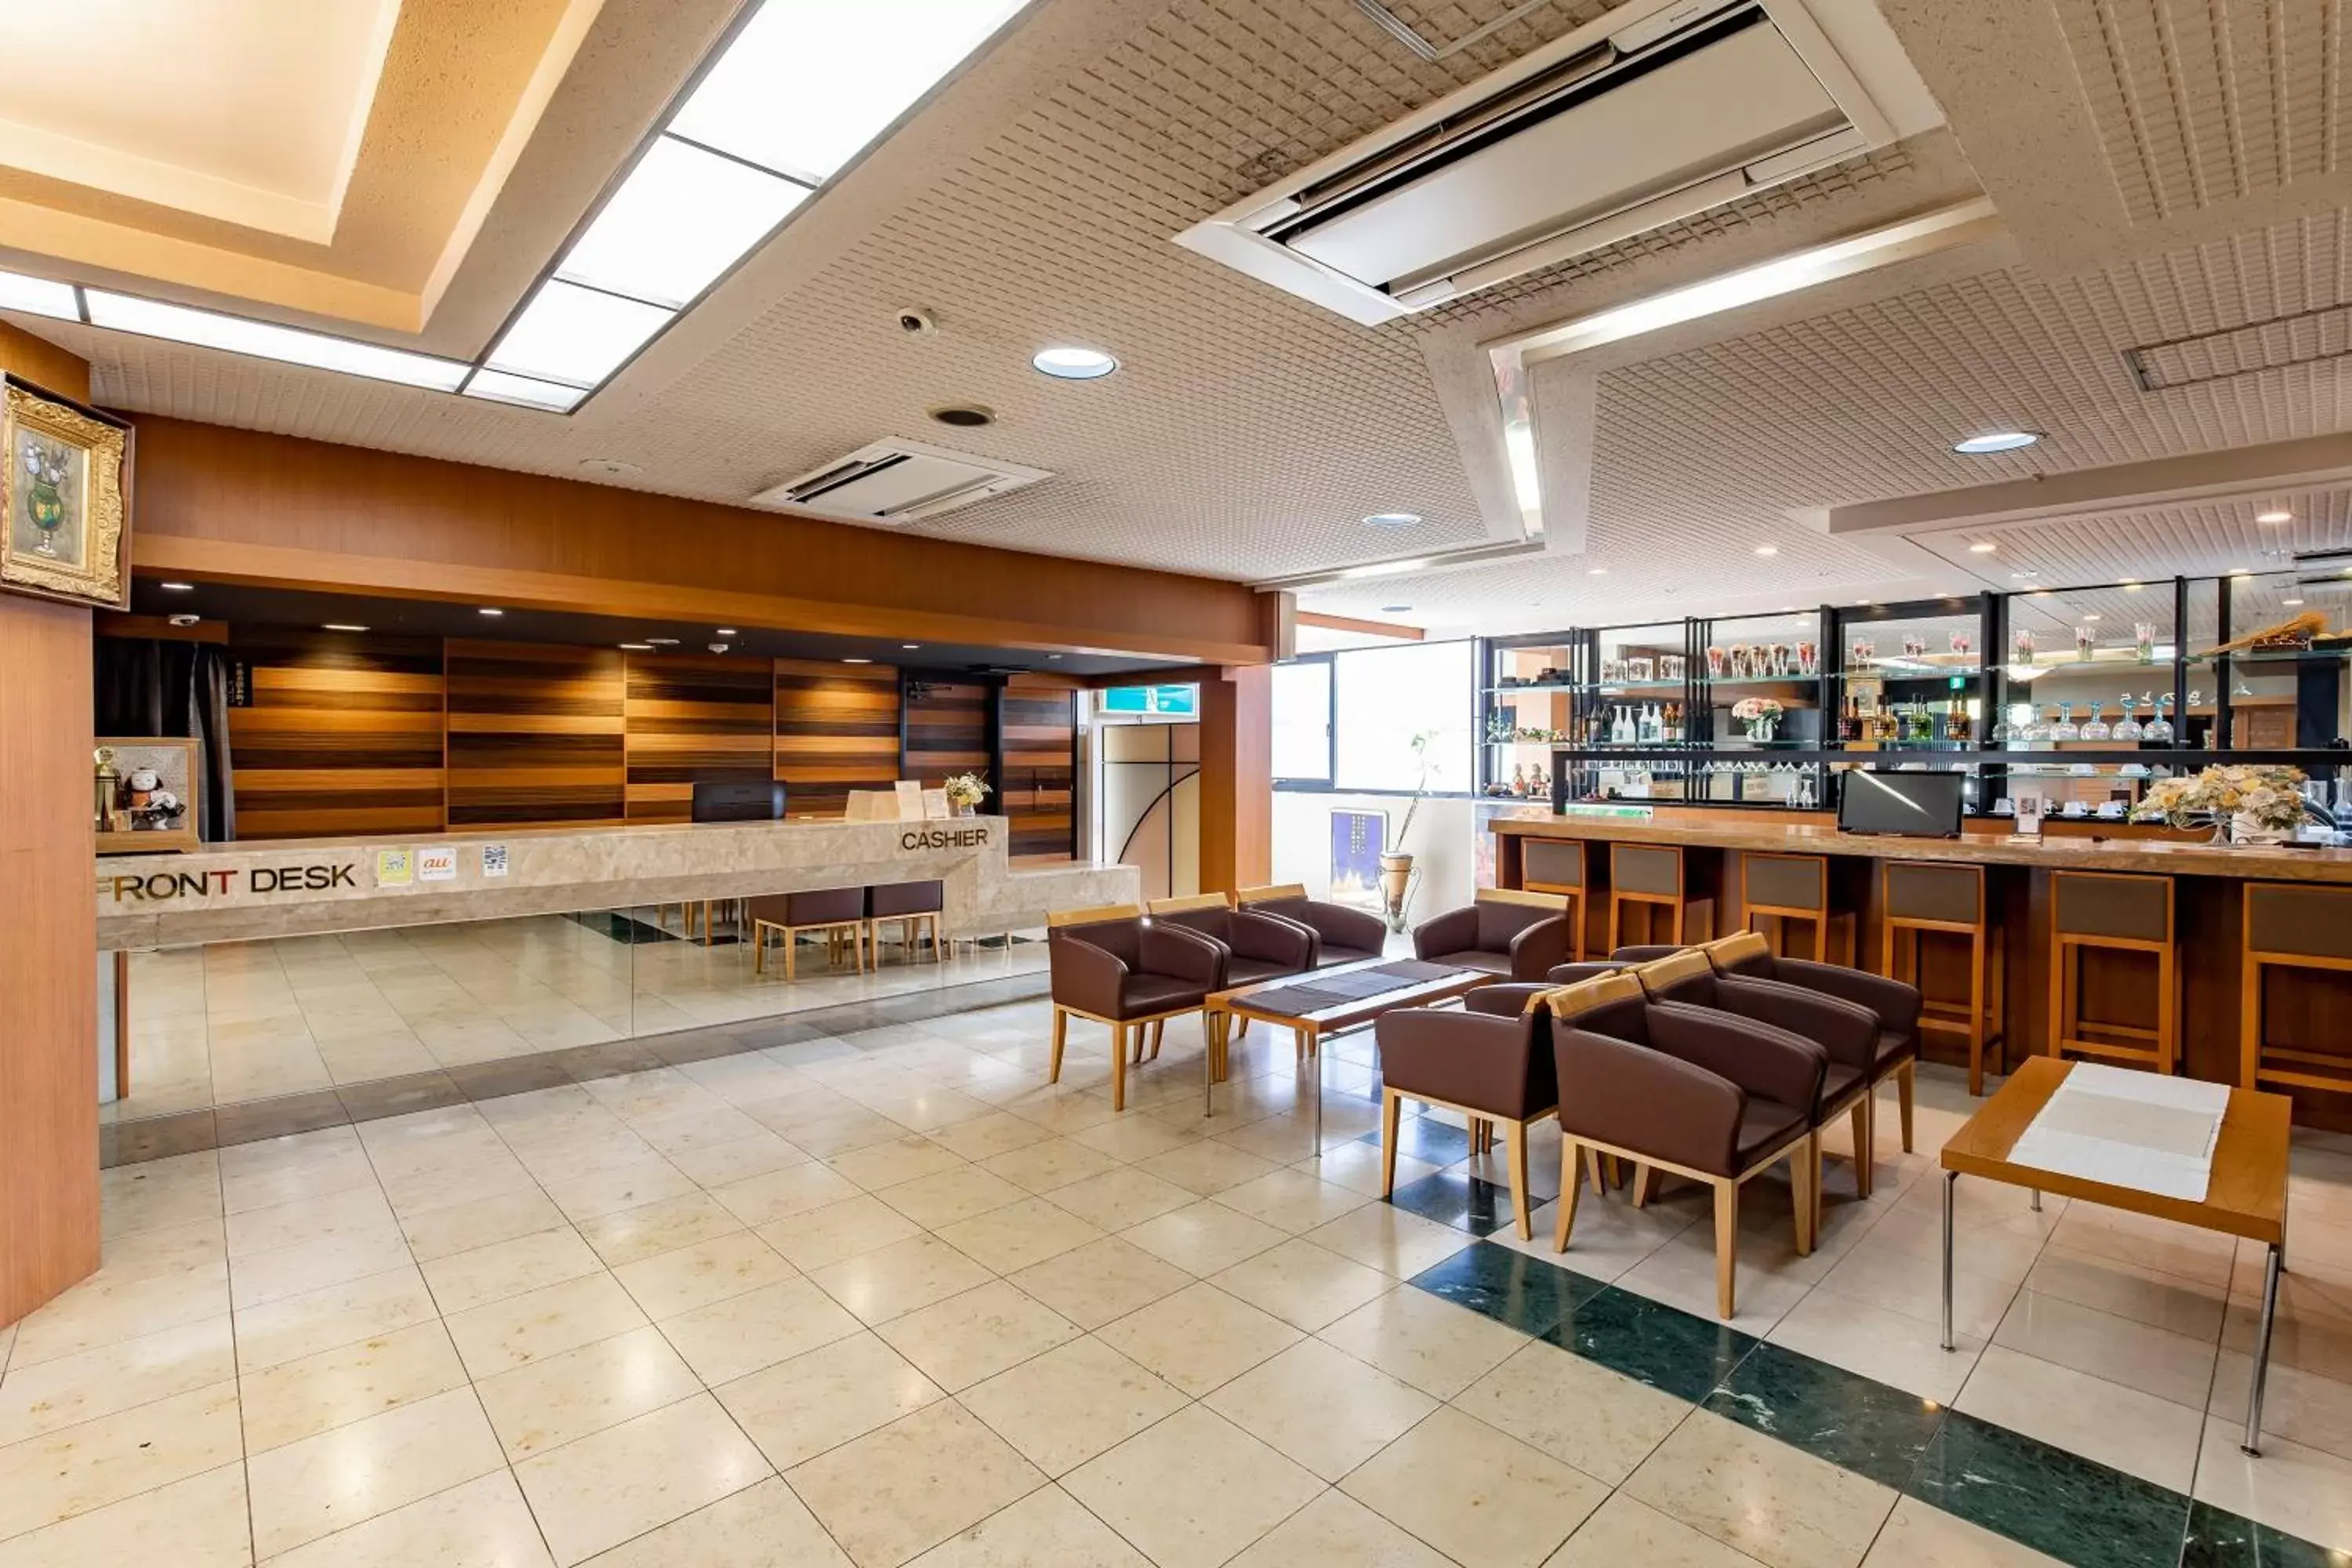 Lobby or reception, Lobby/Reception in Kanazawa Central Hotel